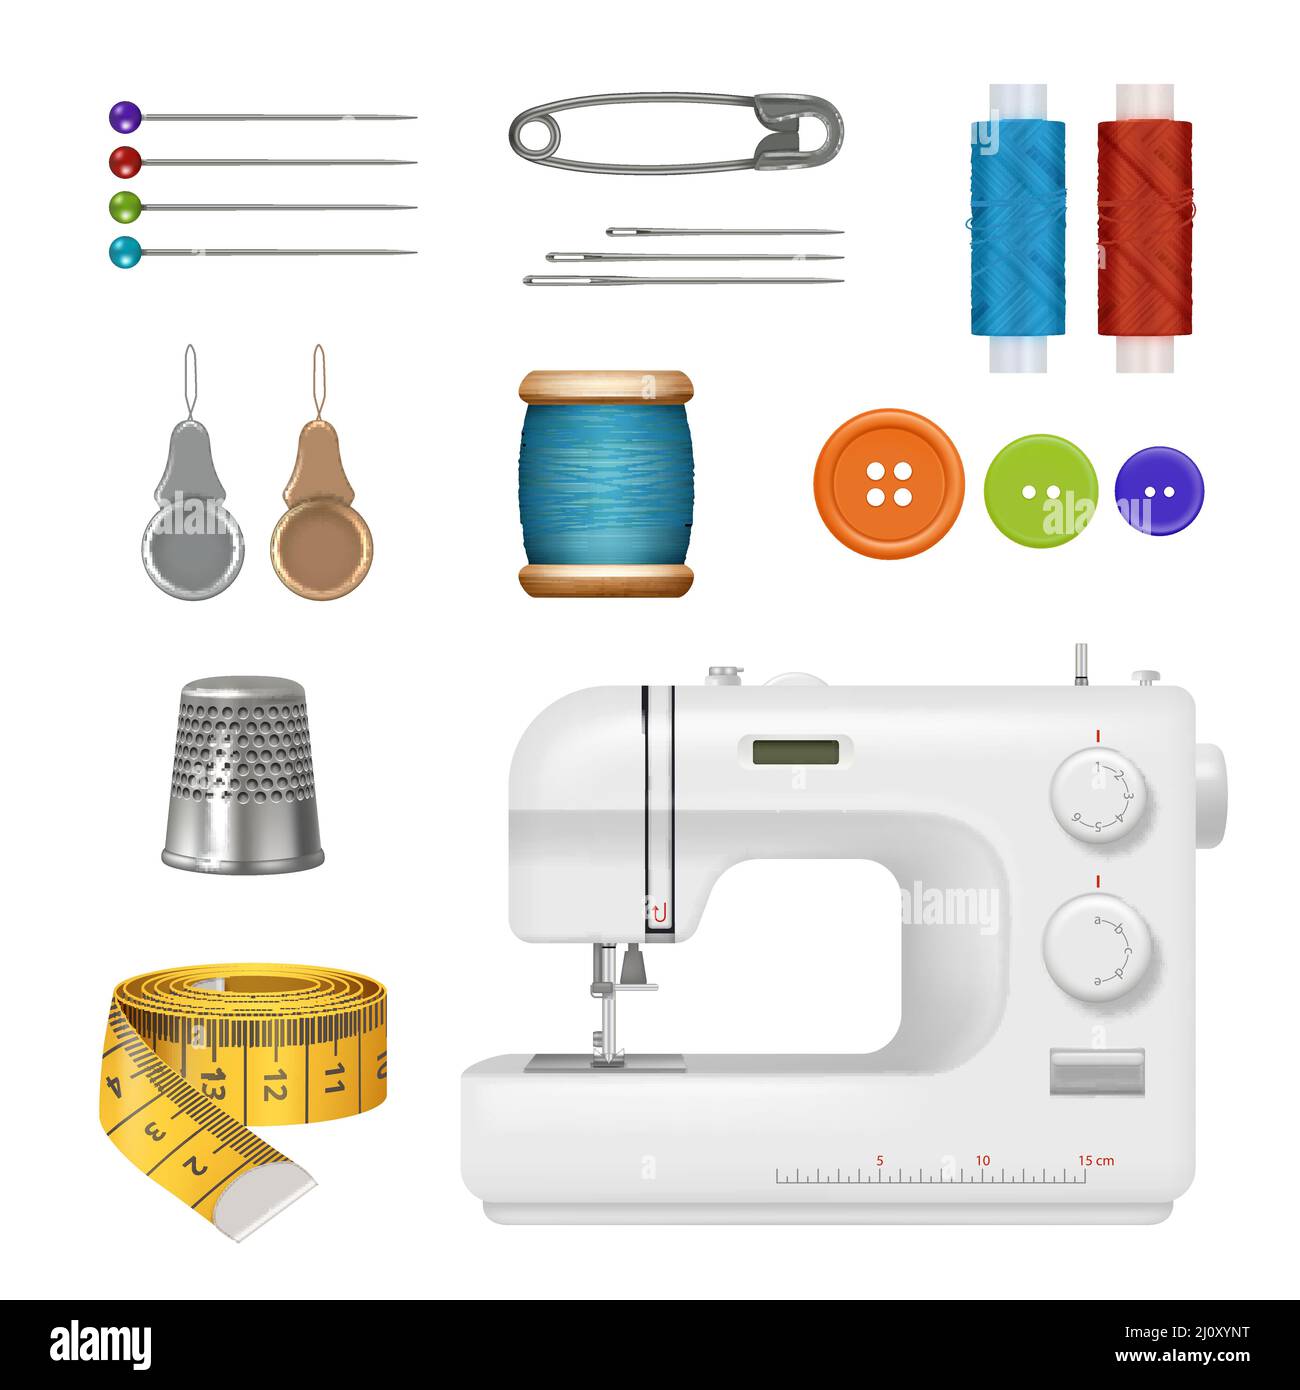 Máquina de coser. Kit de costura realista elementos de colección